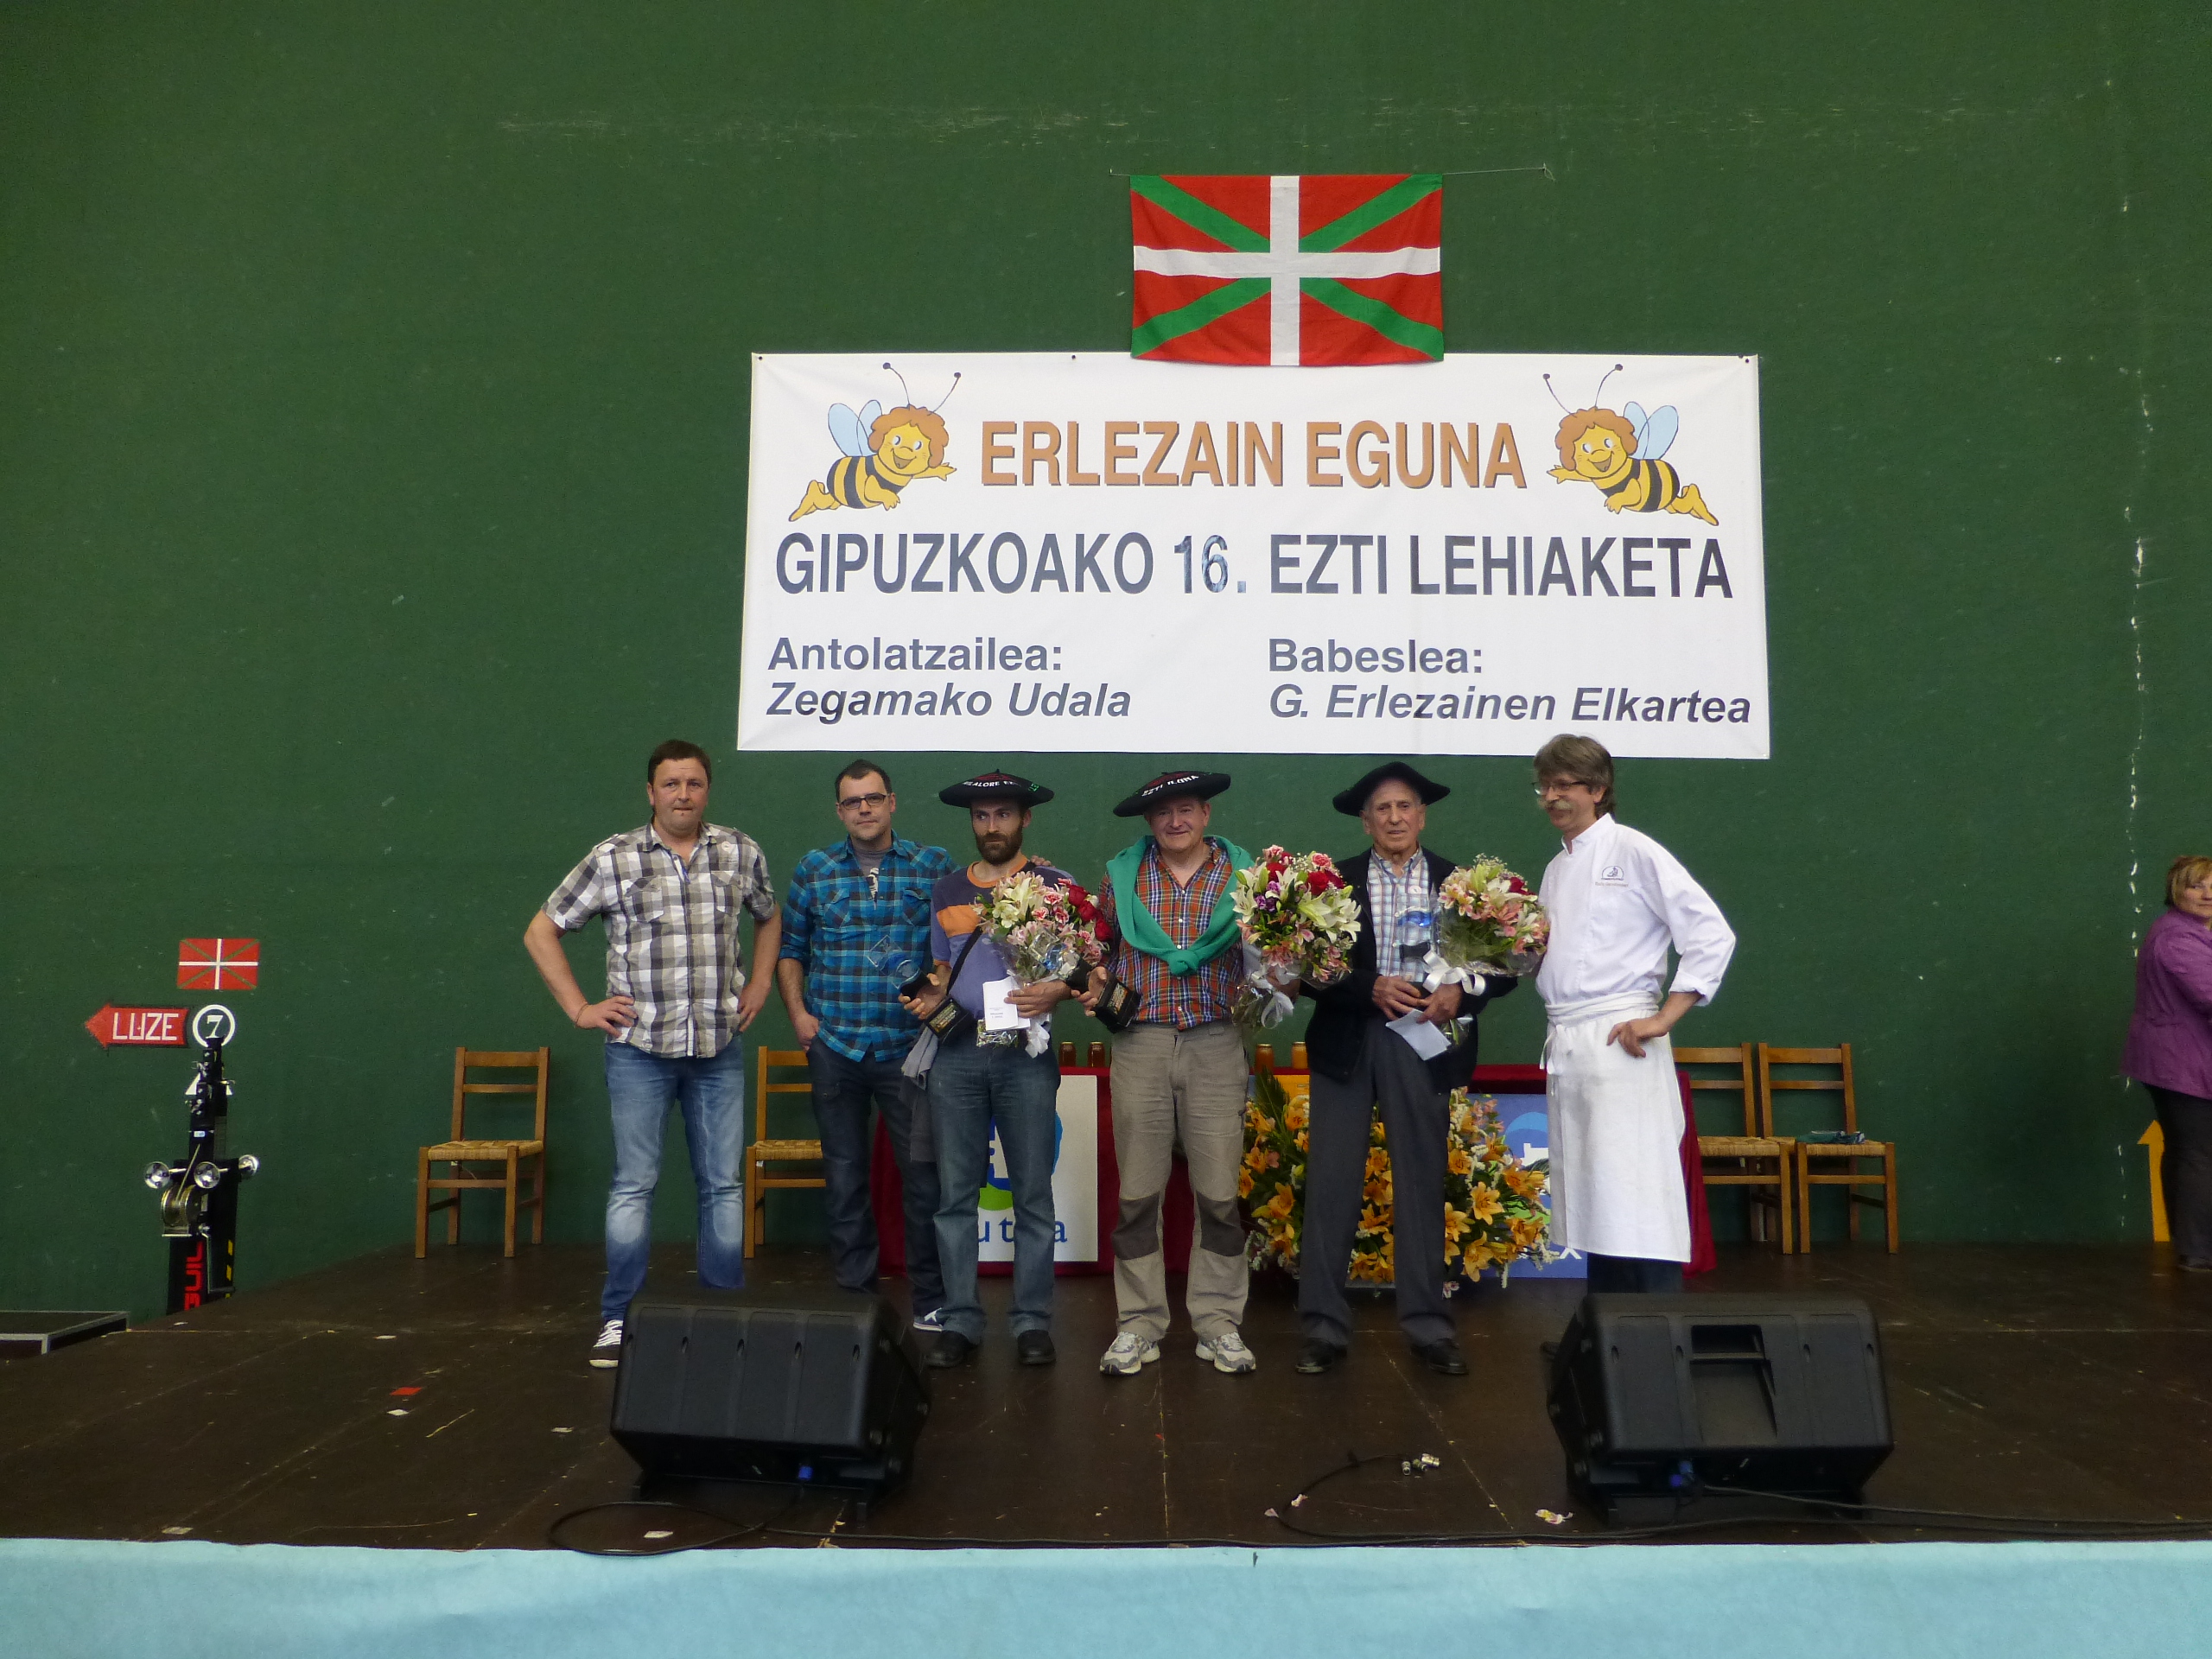 Erlezain eguna 2014